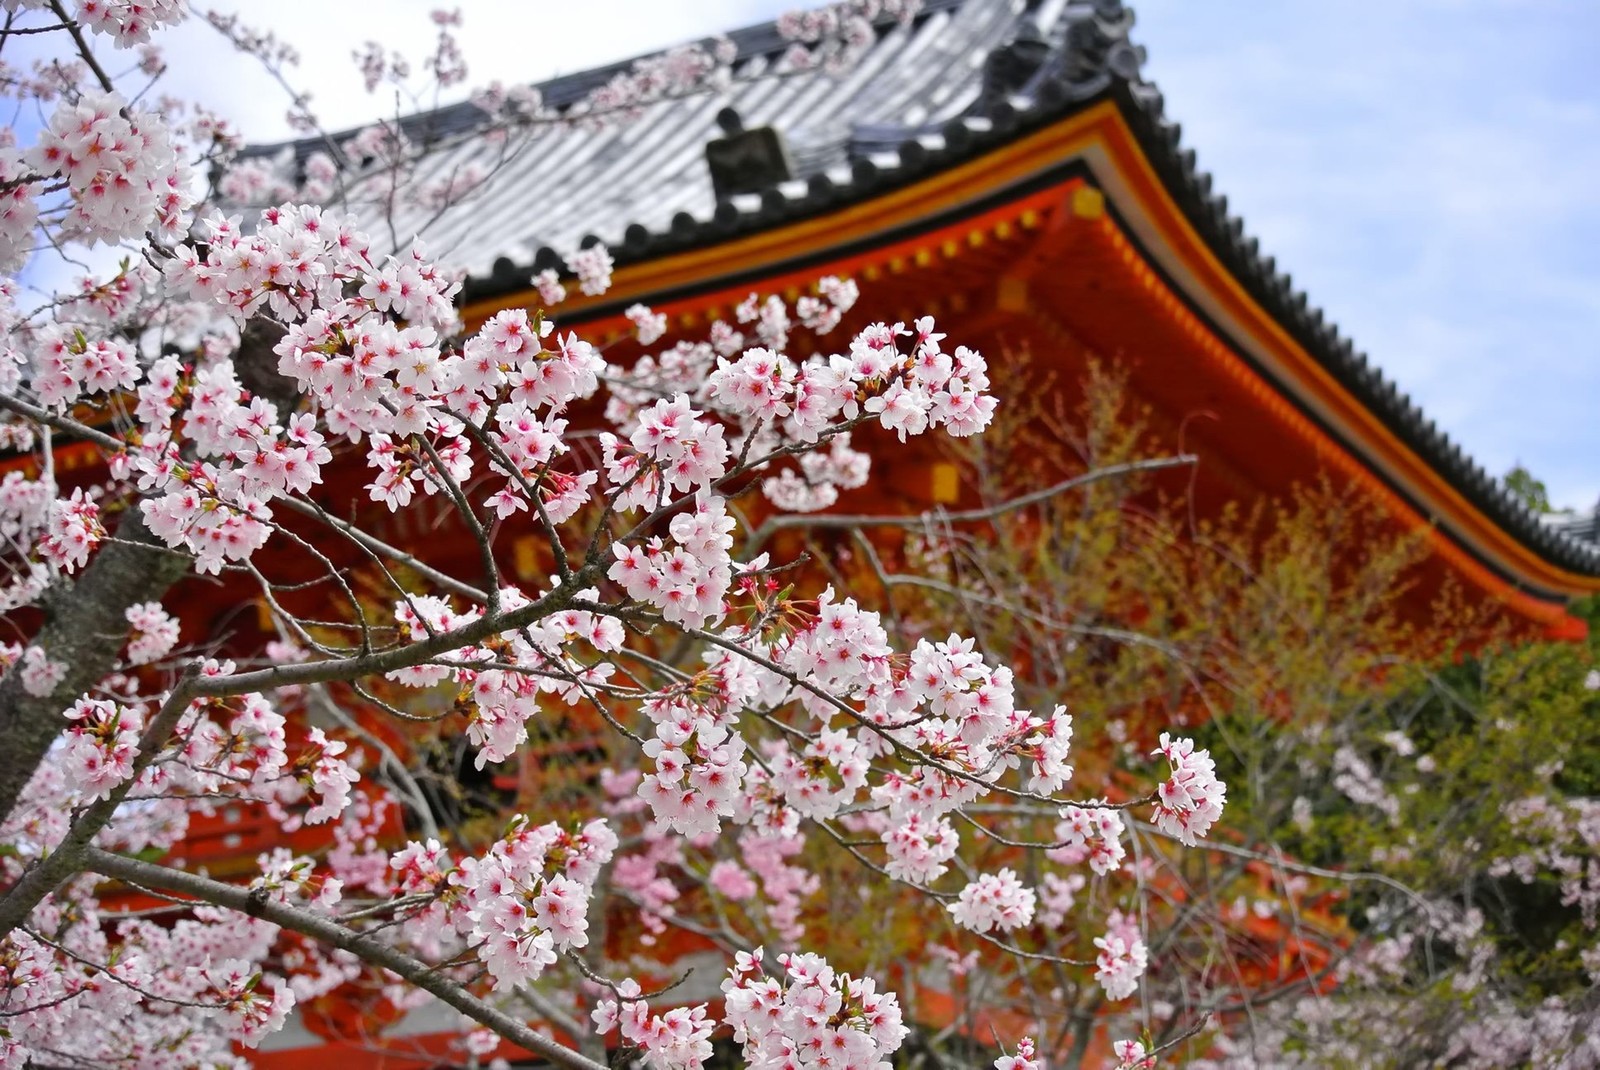 京都府にお祝いを贈る時に知っておきたいこと 贈り物なら胡蝶蘭